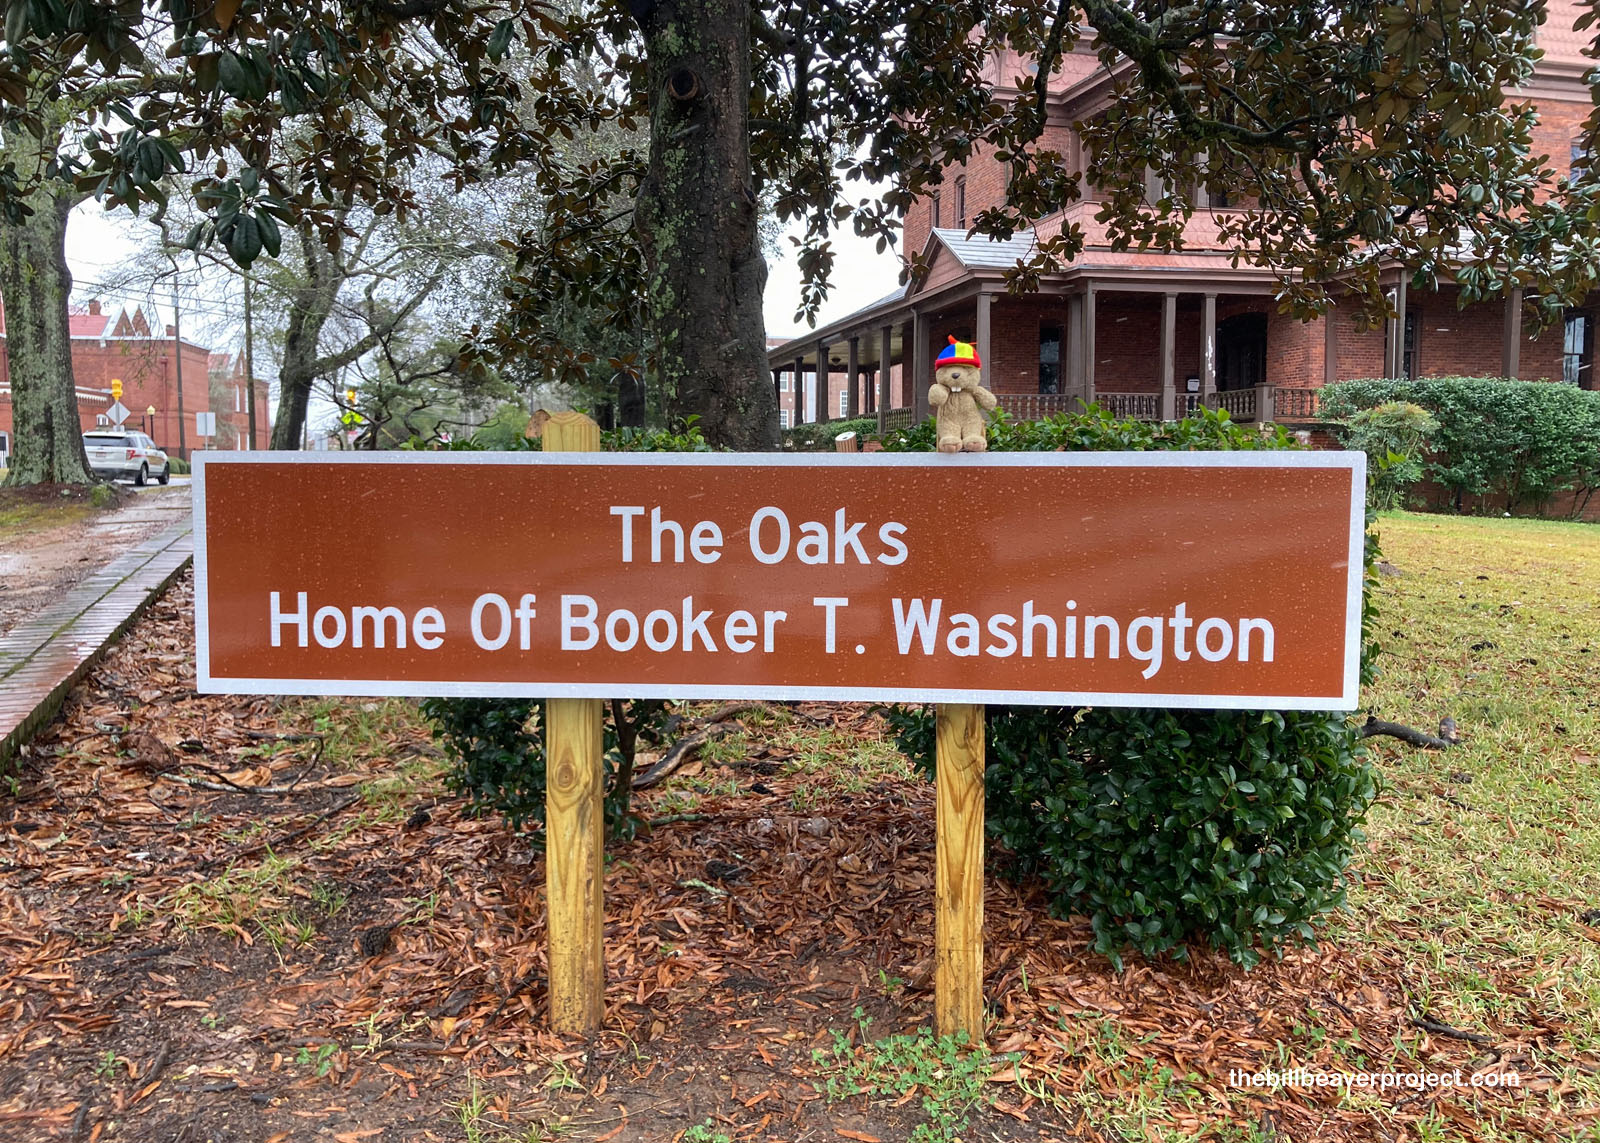 The Oaks, Home of Booker T. Washington